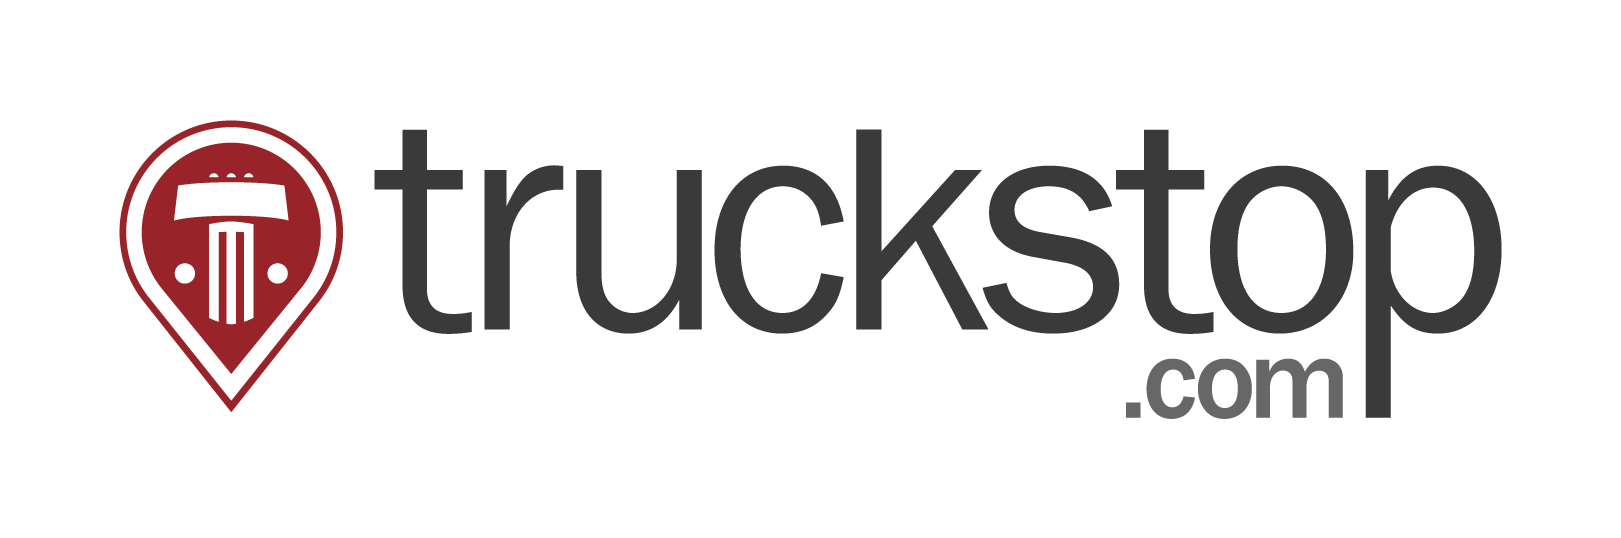 truckstop-com-logo